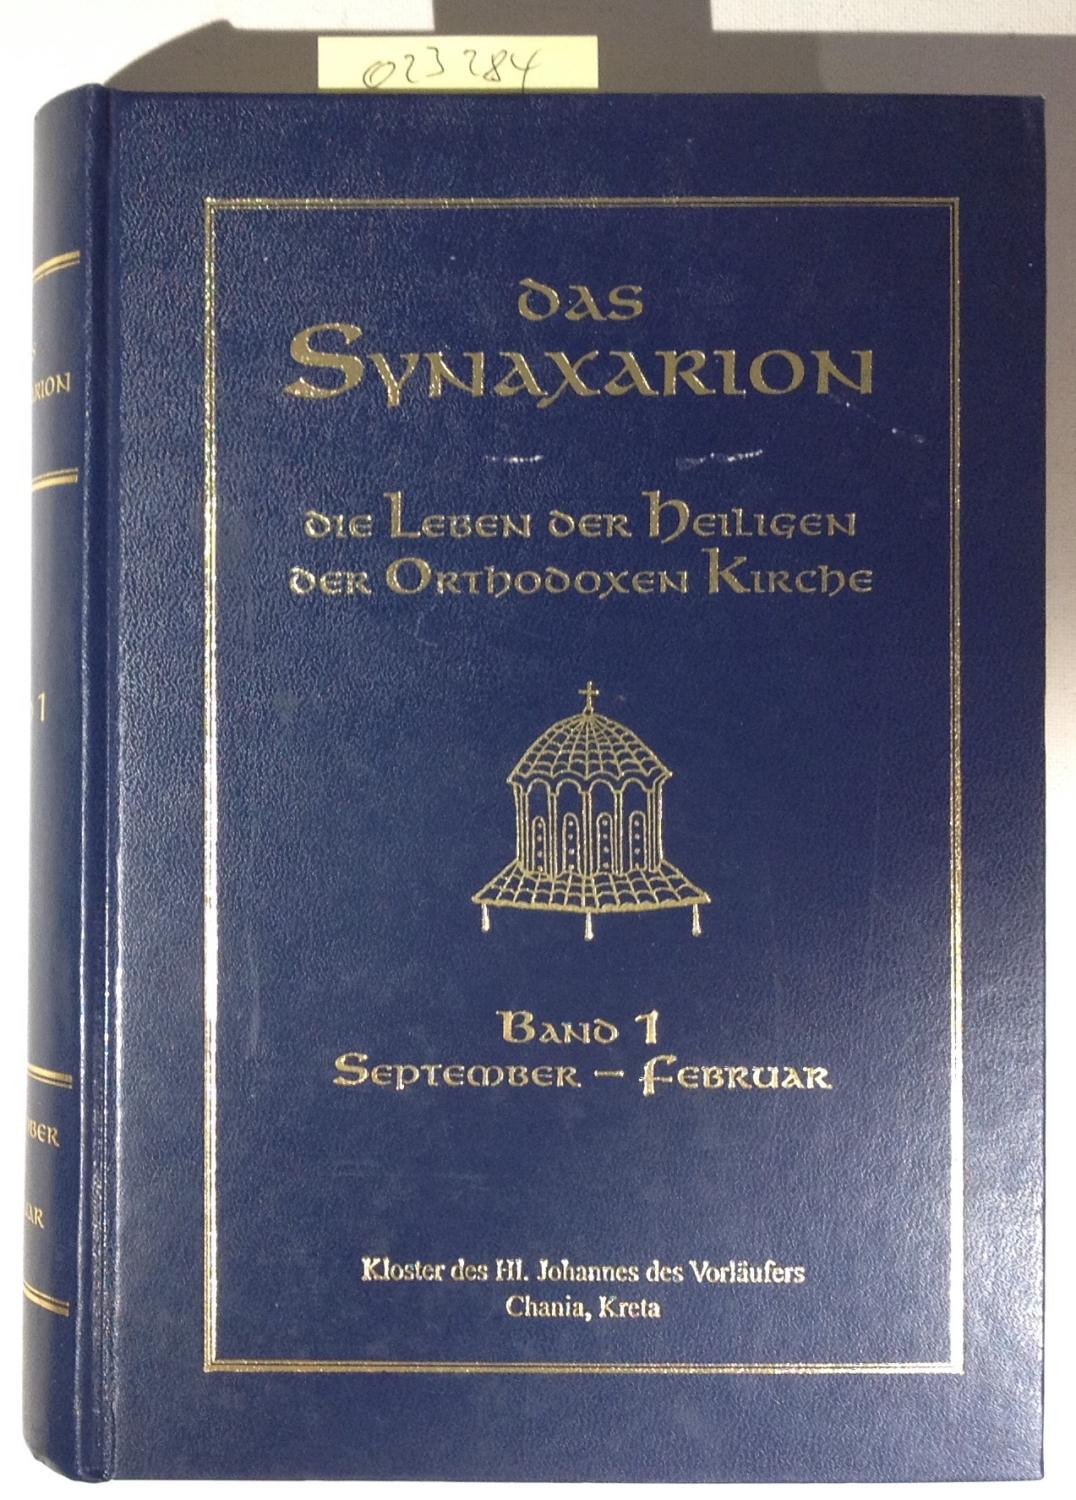 Das Synaxarion - die leben der Heiligen der orthodoxen Kirche in 2 Bänden